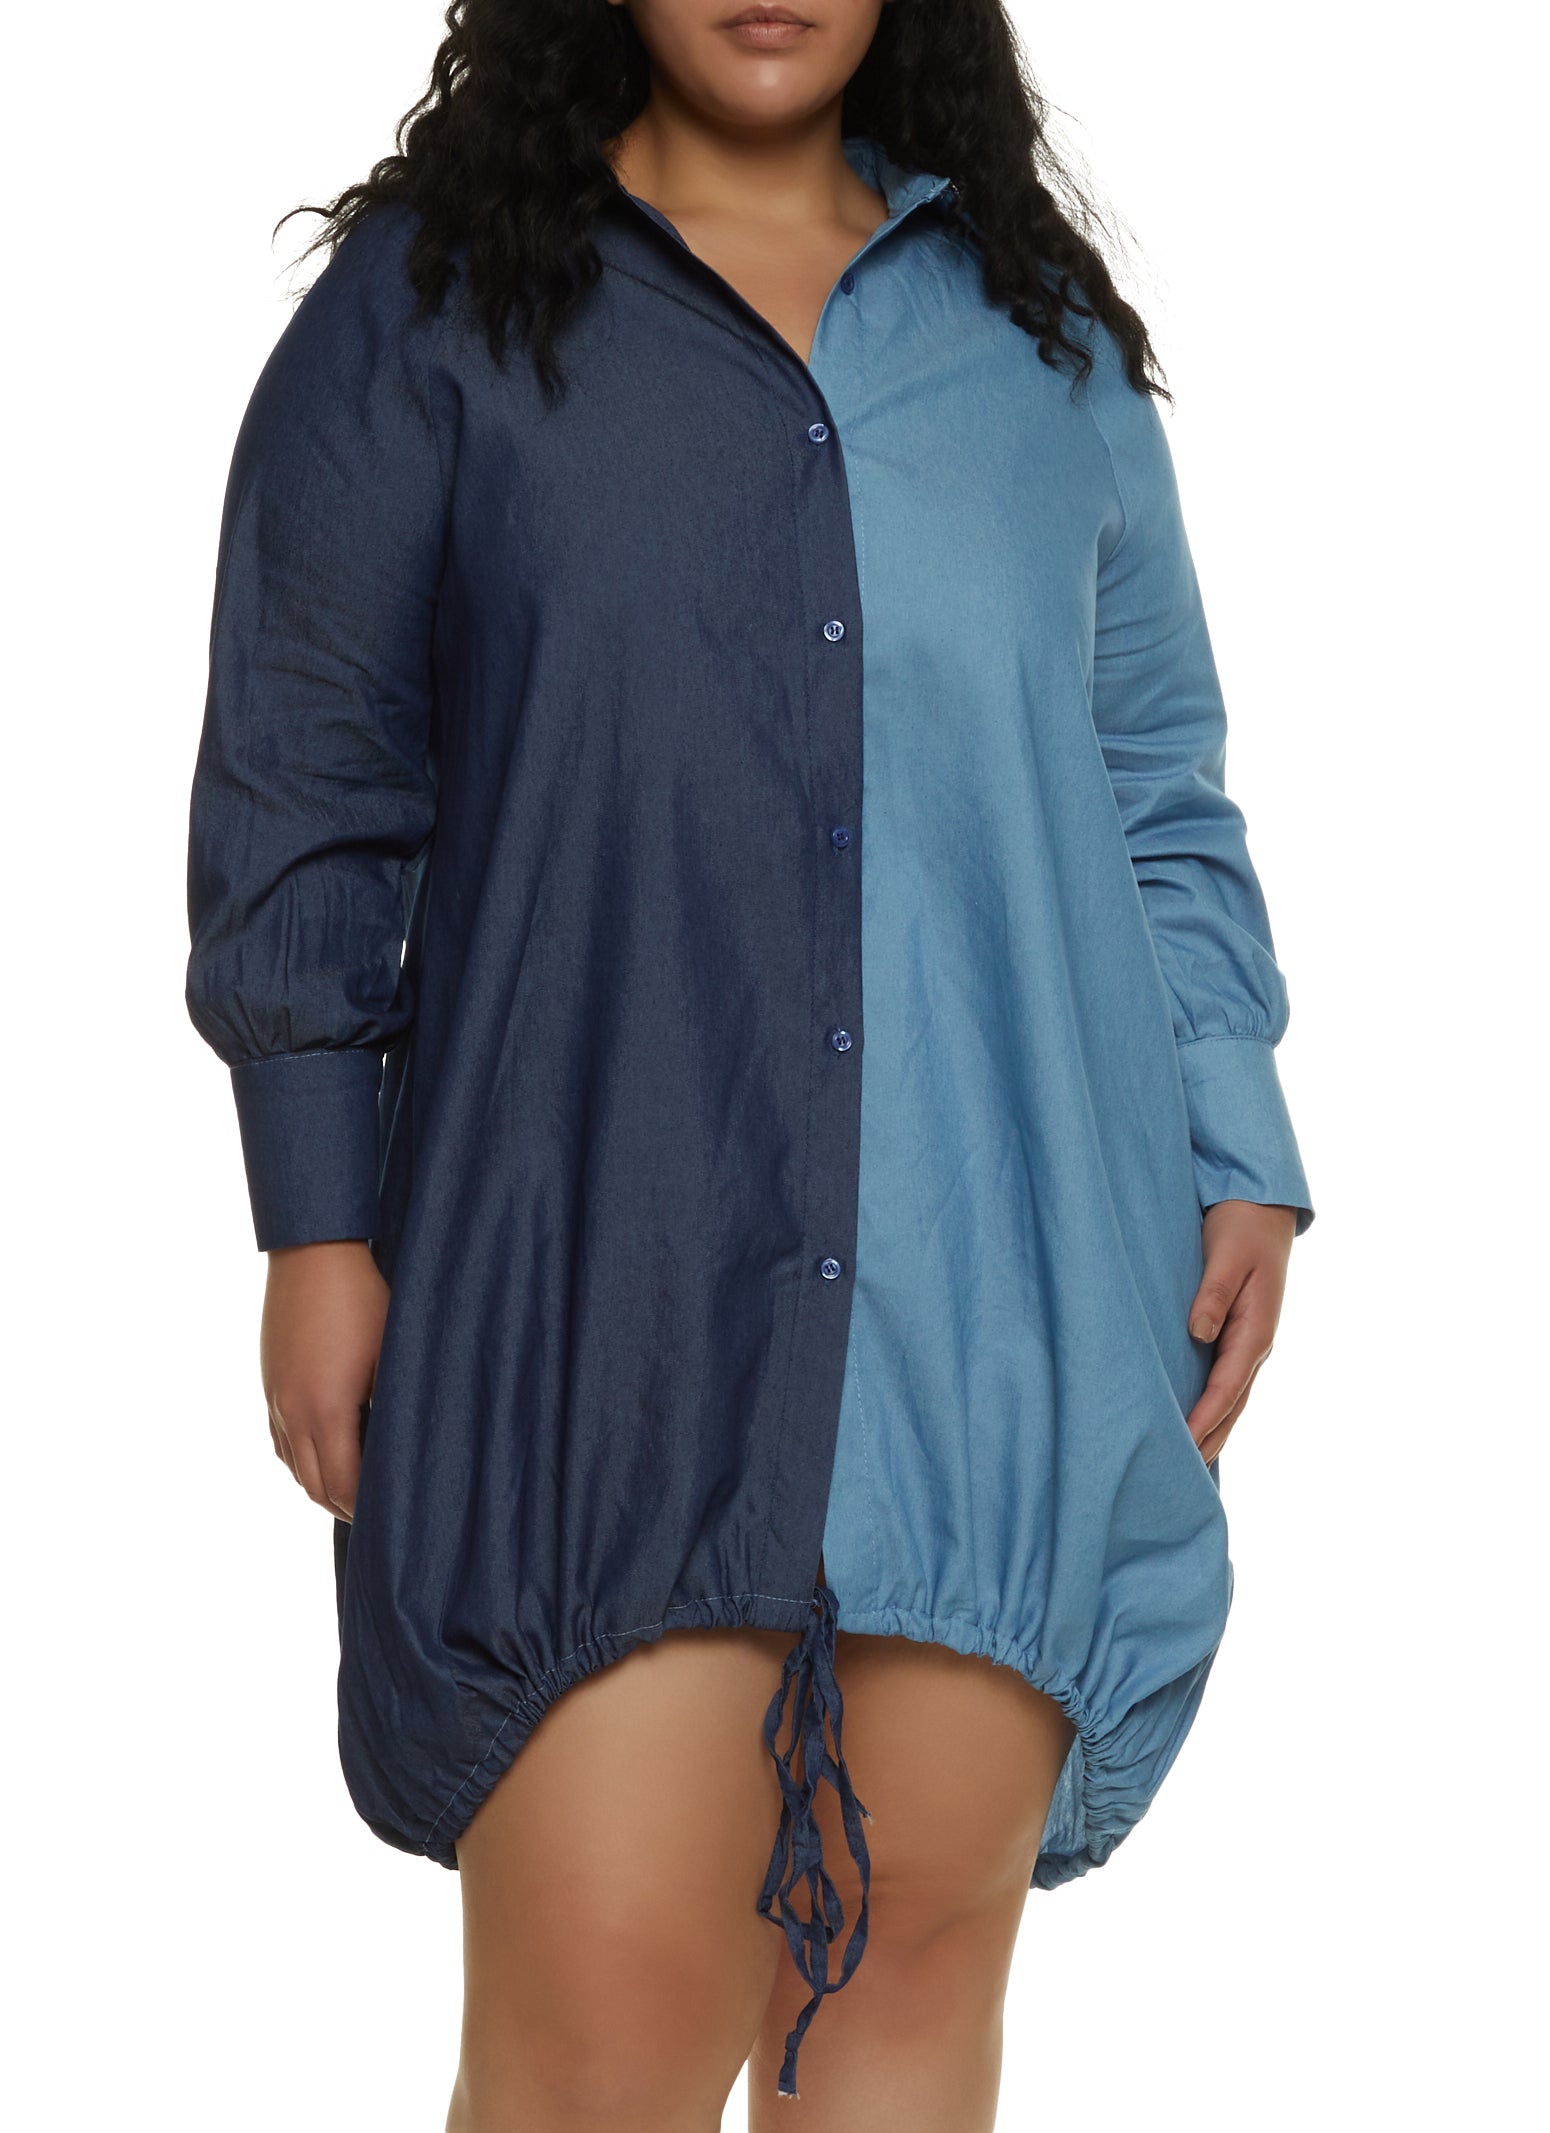 Unique Bargains Women's Plus Size Frayed Adjustable Strap Denim Dress -  Walmart.com